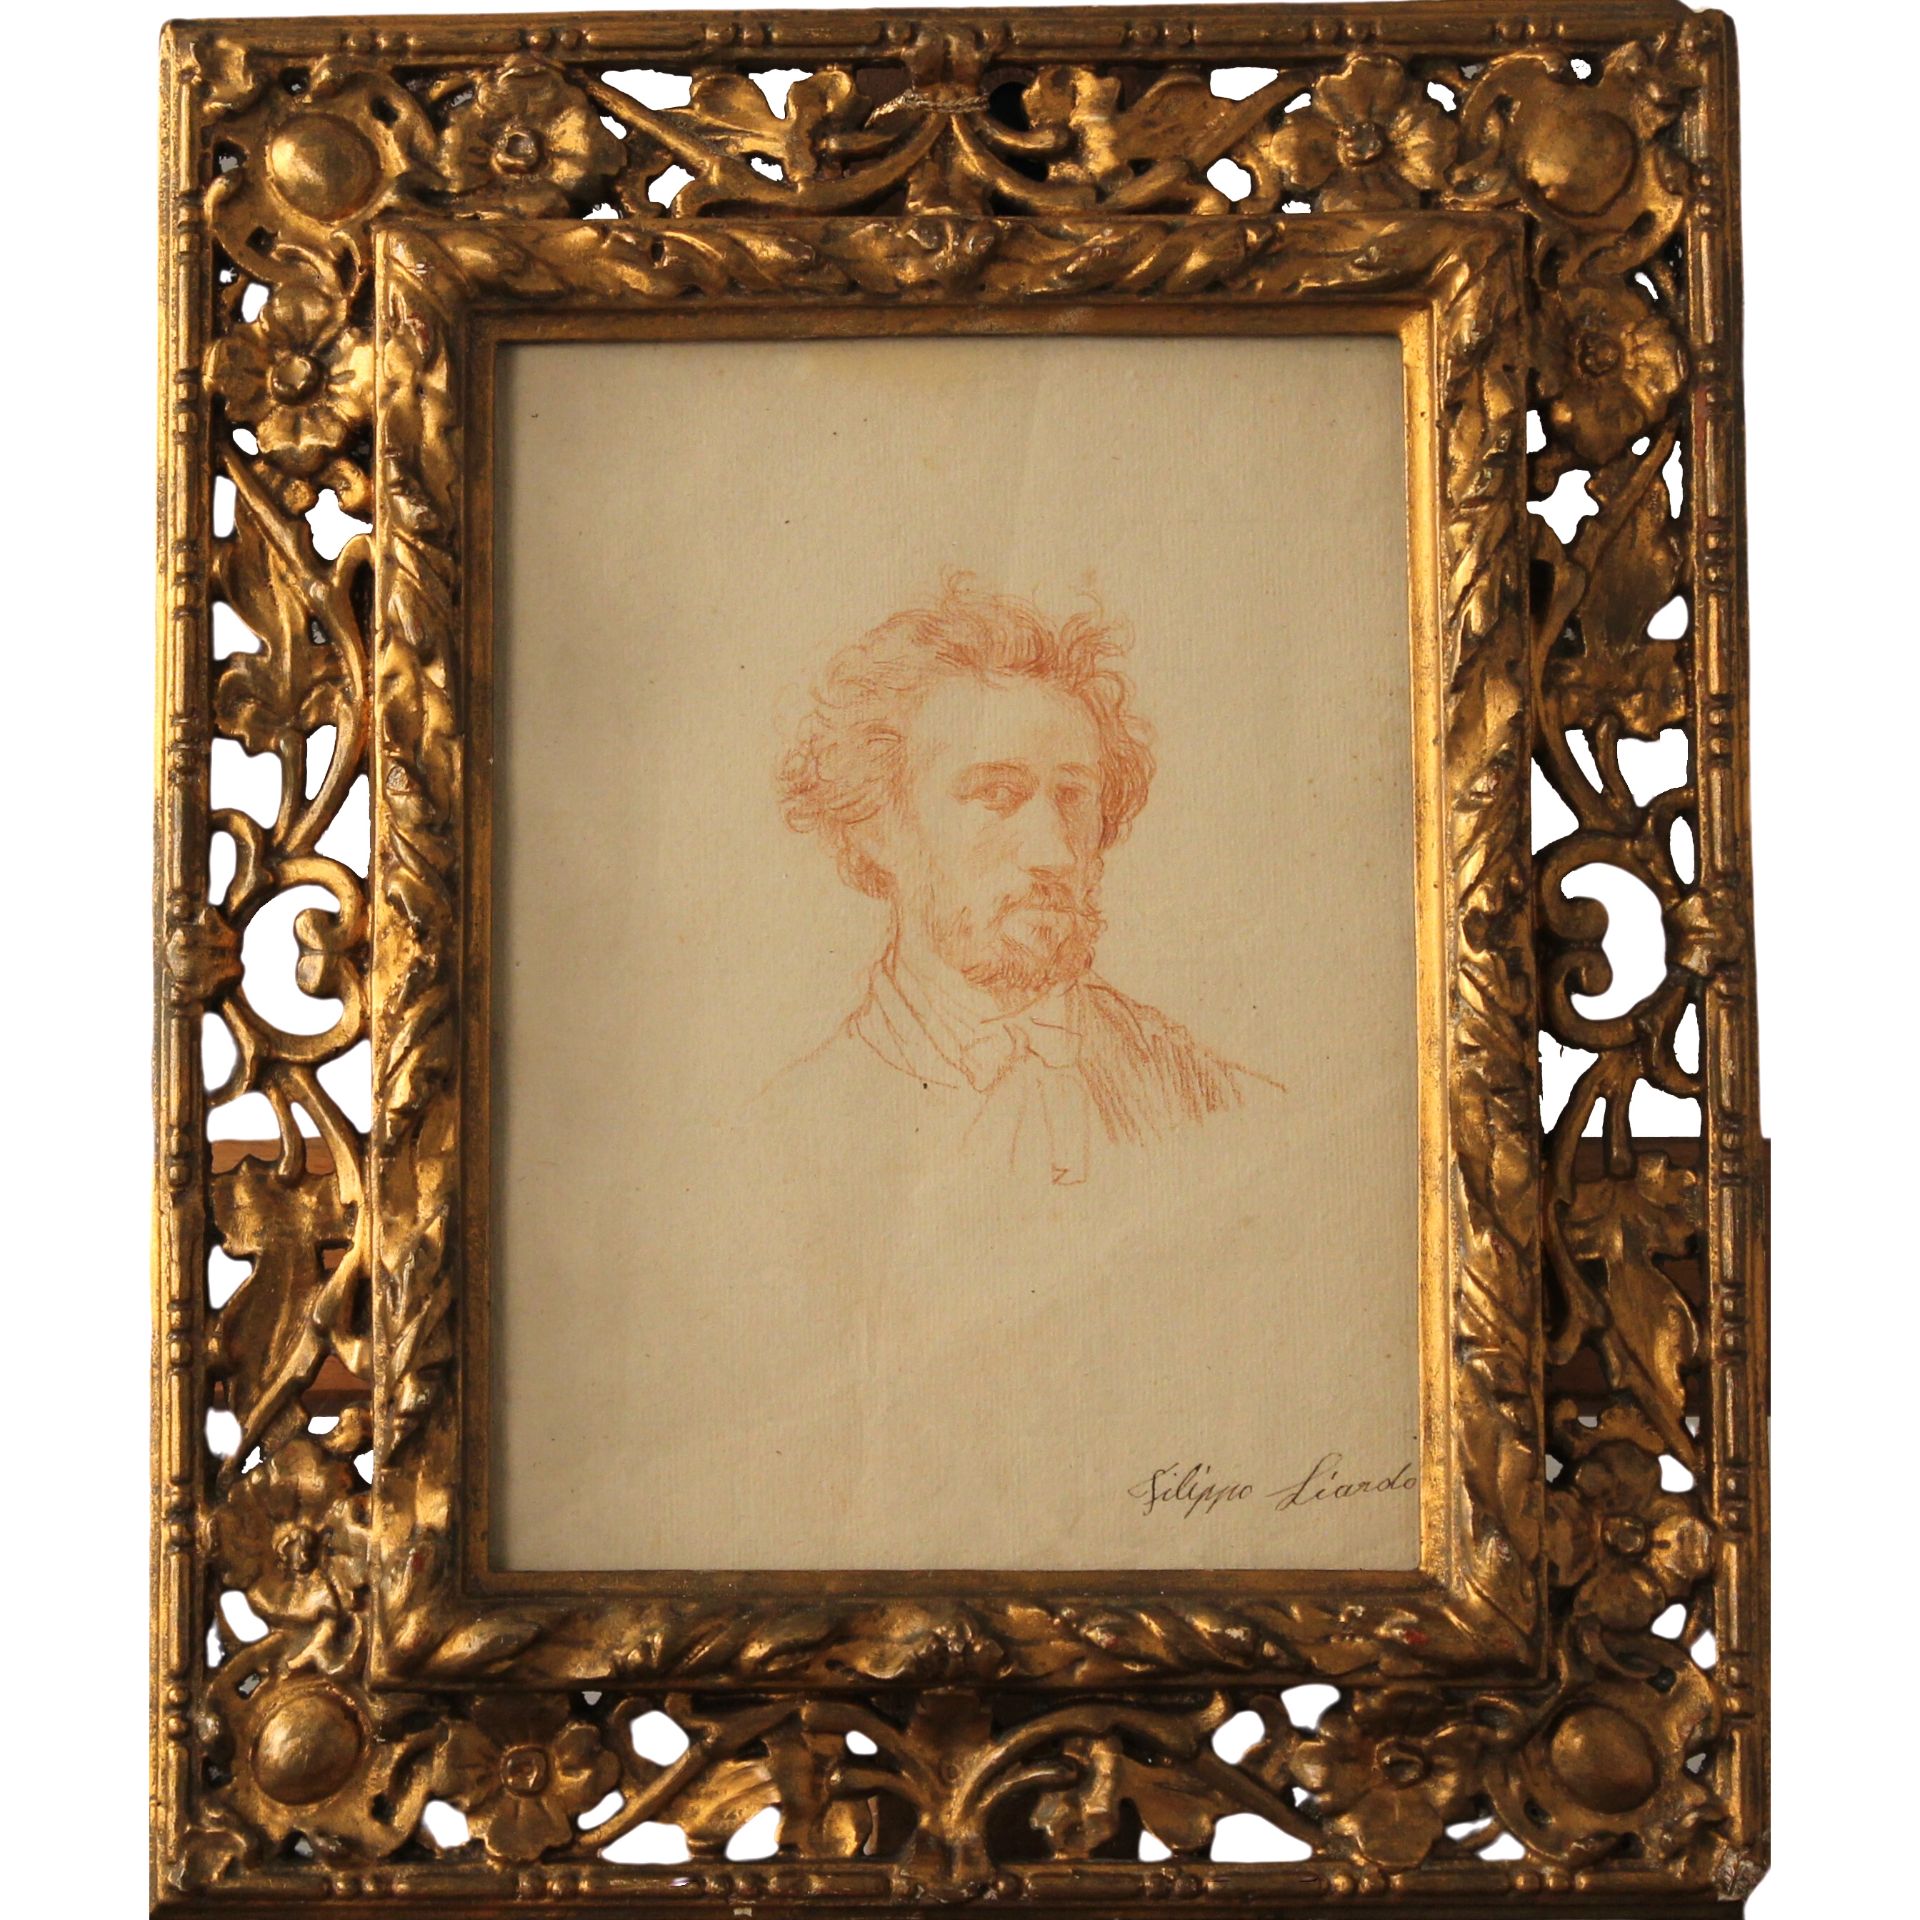 Filippo Liardo (1834/1917) "Autoritratto" - "Self Portrait"